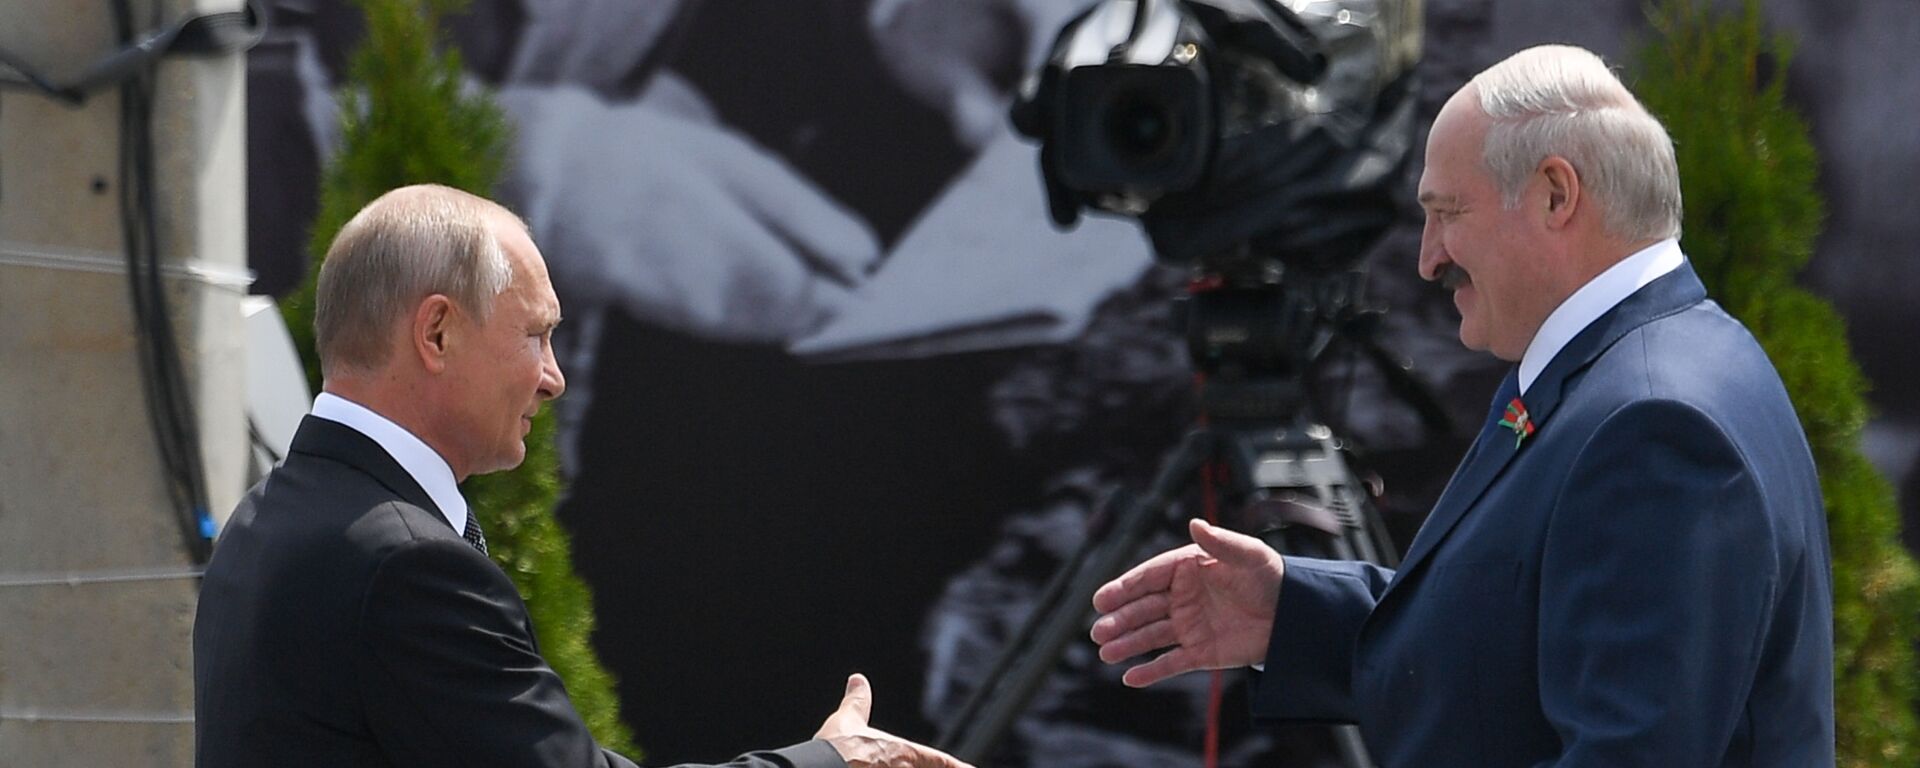 Владимир Путин и Александр Лукашенко на церемонии открытия Ржевского мемориала - Sputnik Молдова, 1920, 09.09.2021